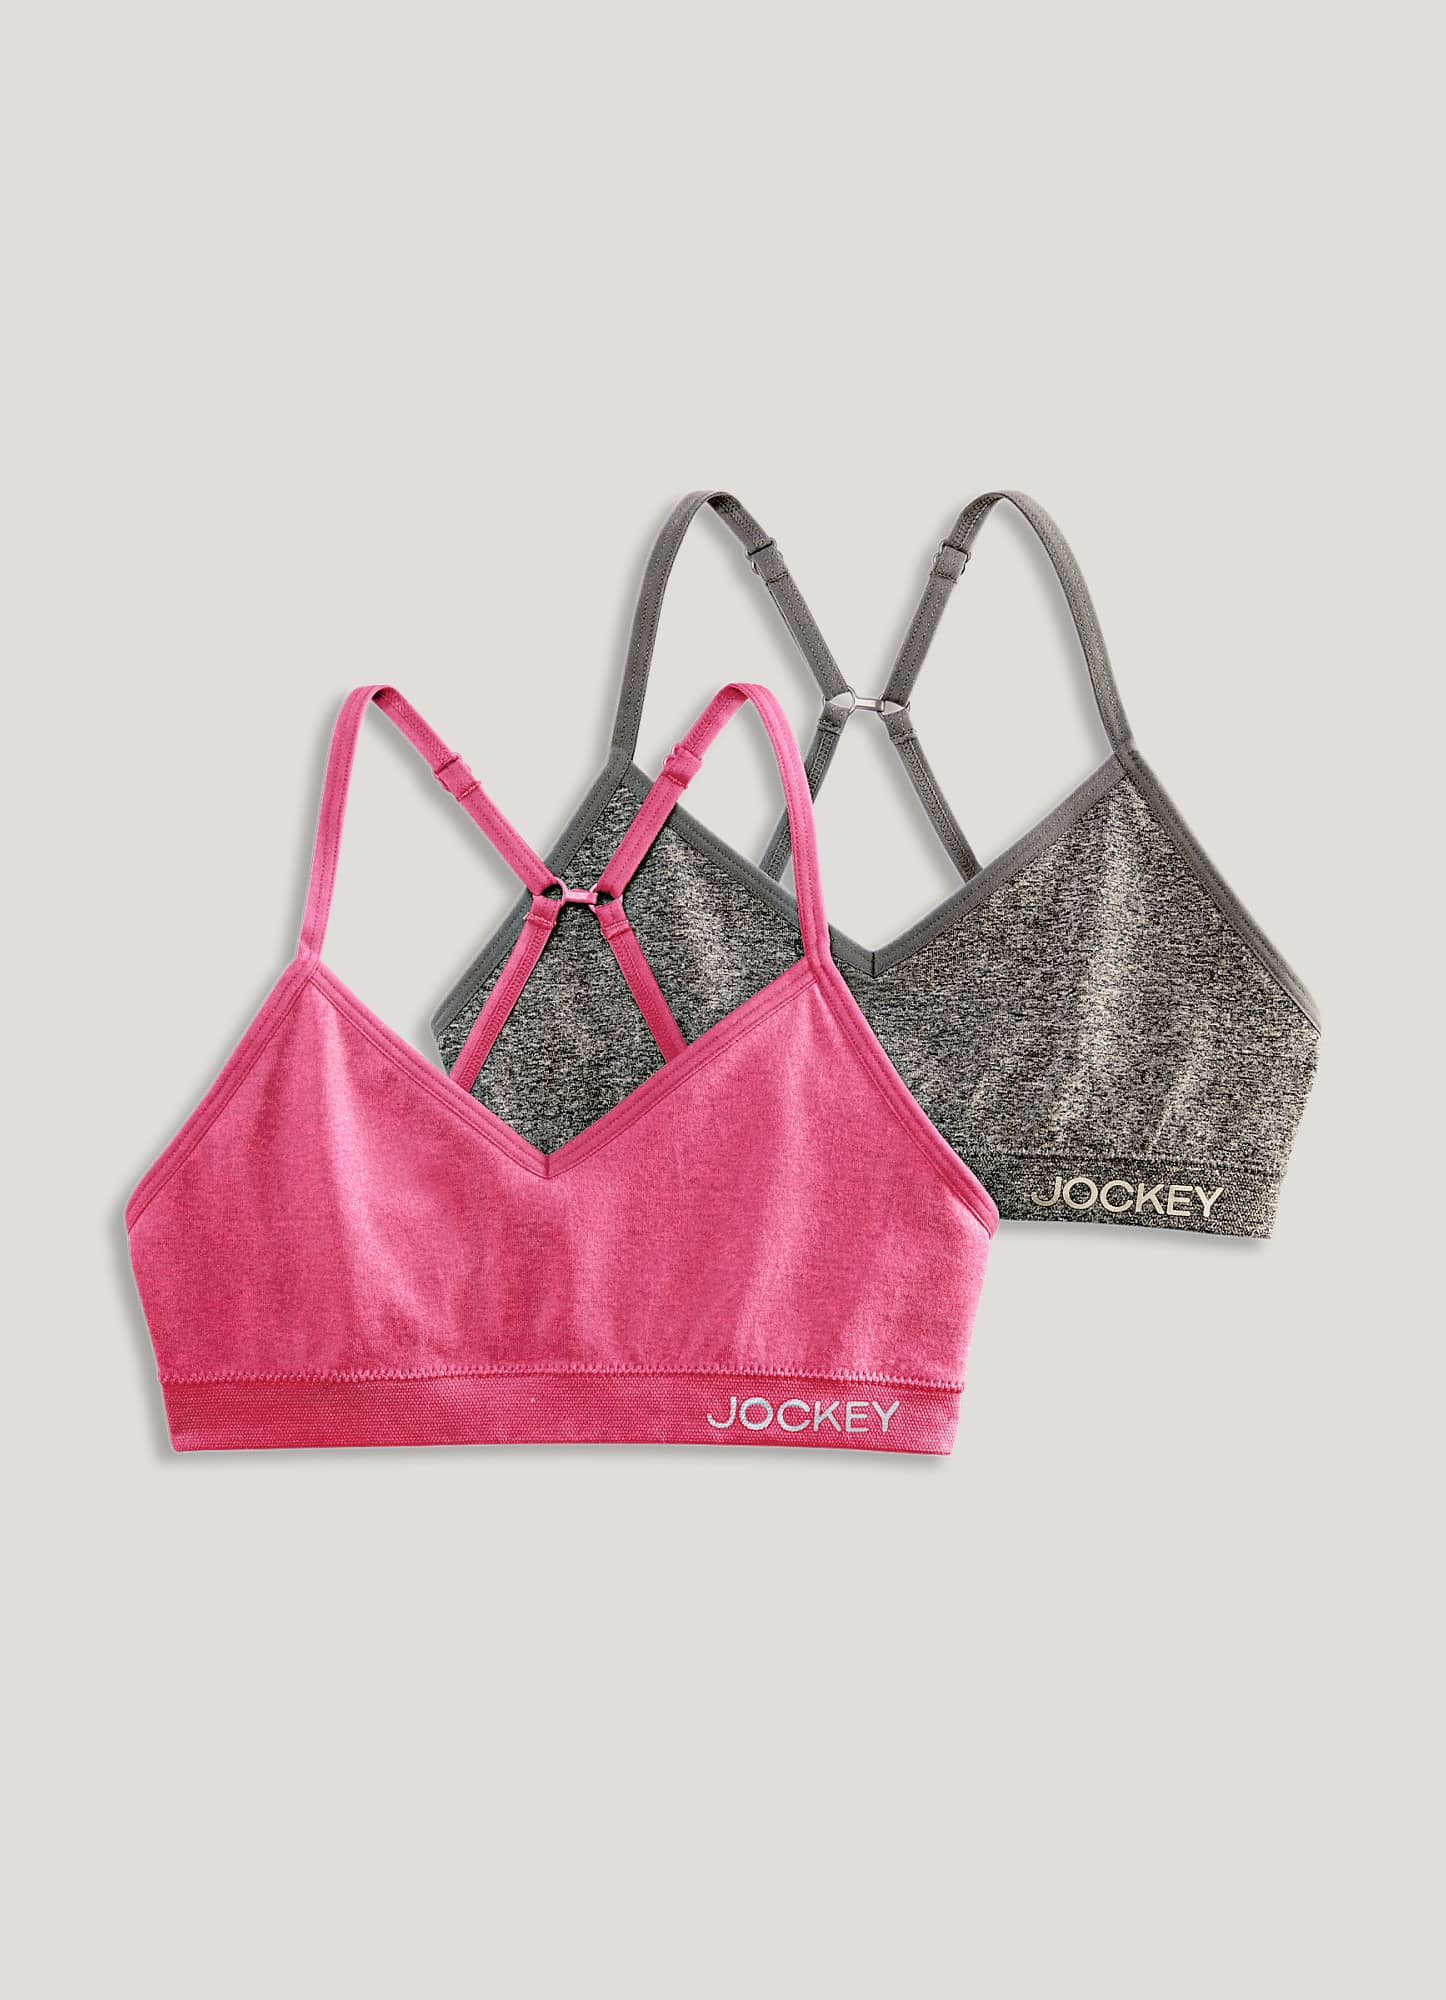 Jockey® Essentials Girls' Cotton Stretch Bralette - 2 pack, Sizes S-XL  (6-16) 